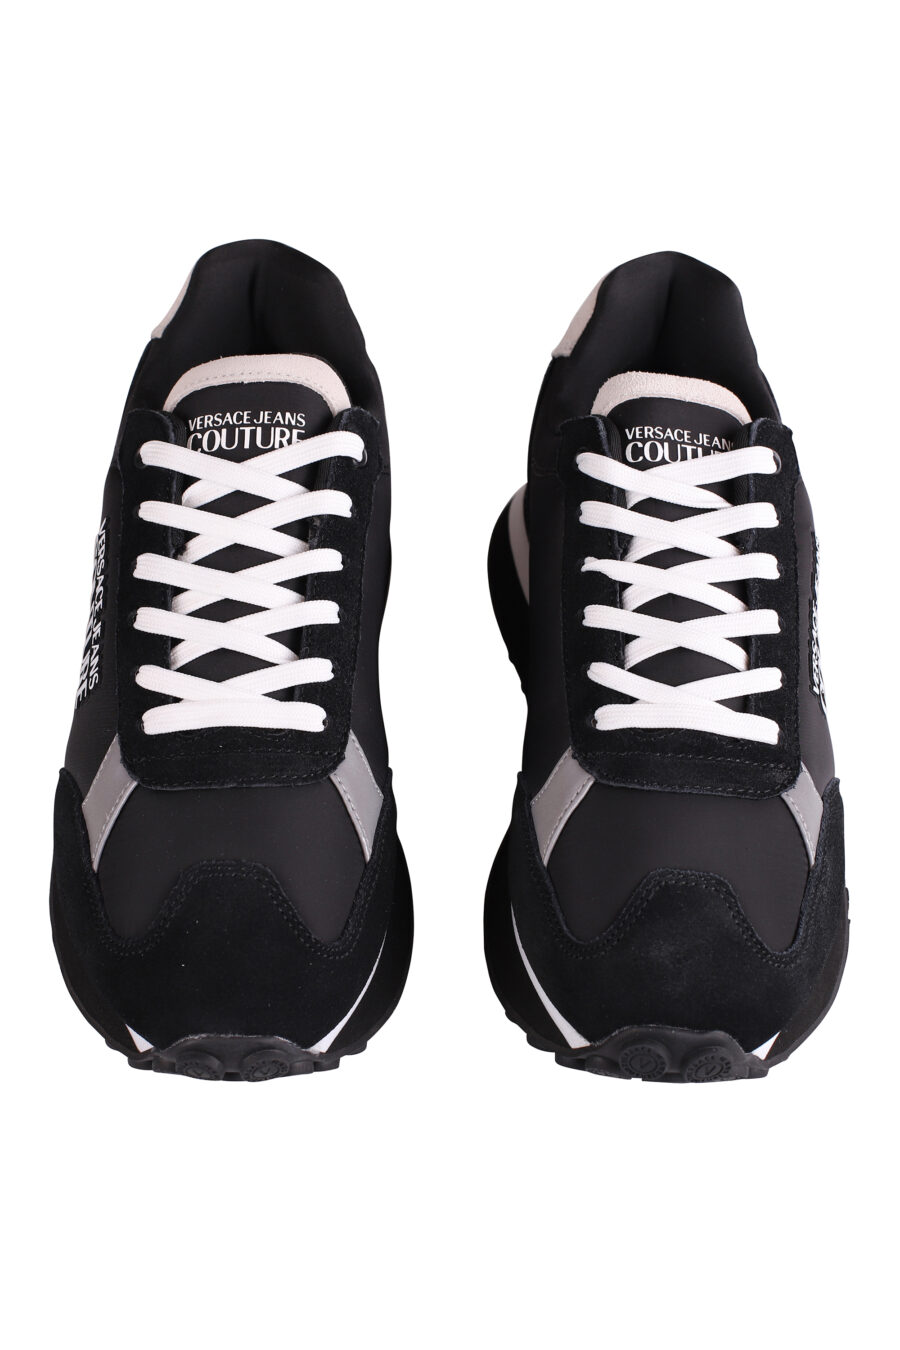 Zapatillas negras y beige con plataforma y logo - IMG 9113